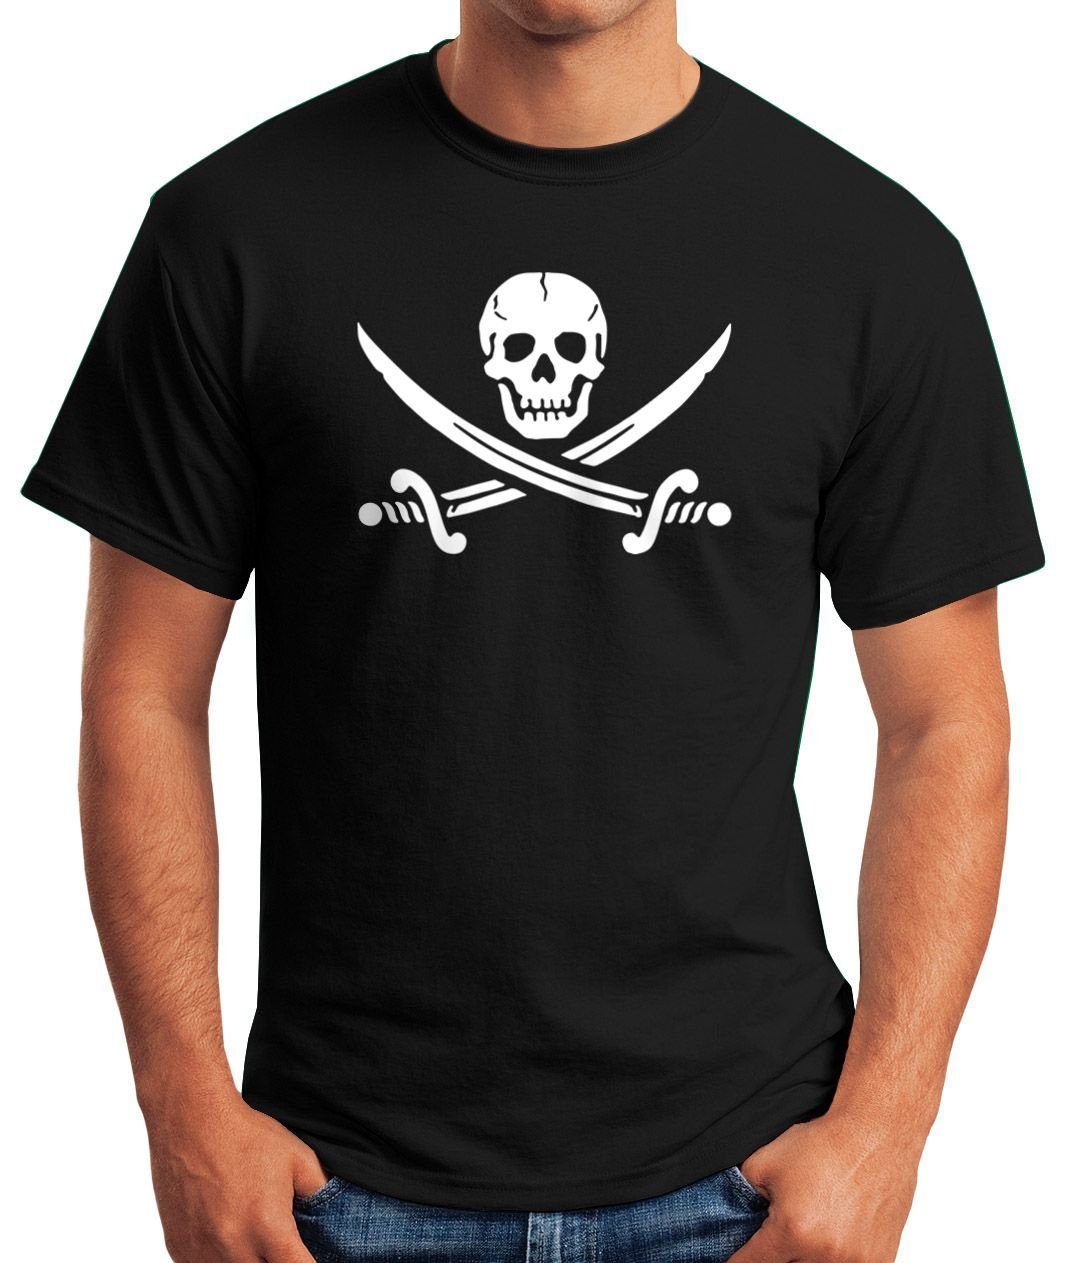 Jack Motiv Print Print-Shirt mit Fun T-Shirt Black Shirt Herren Moonworks® Pirat MoonWorks Totenkopf Piratenflagge